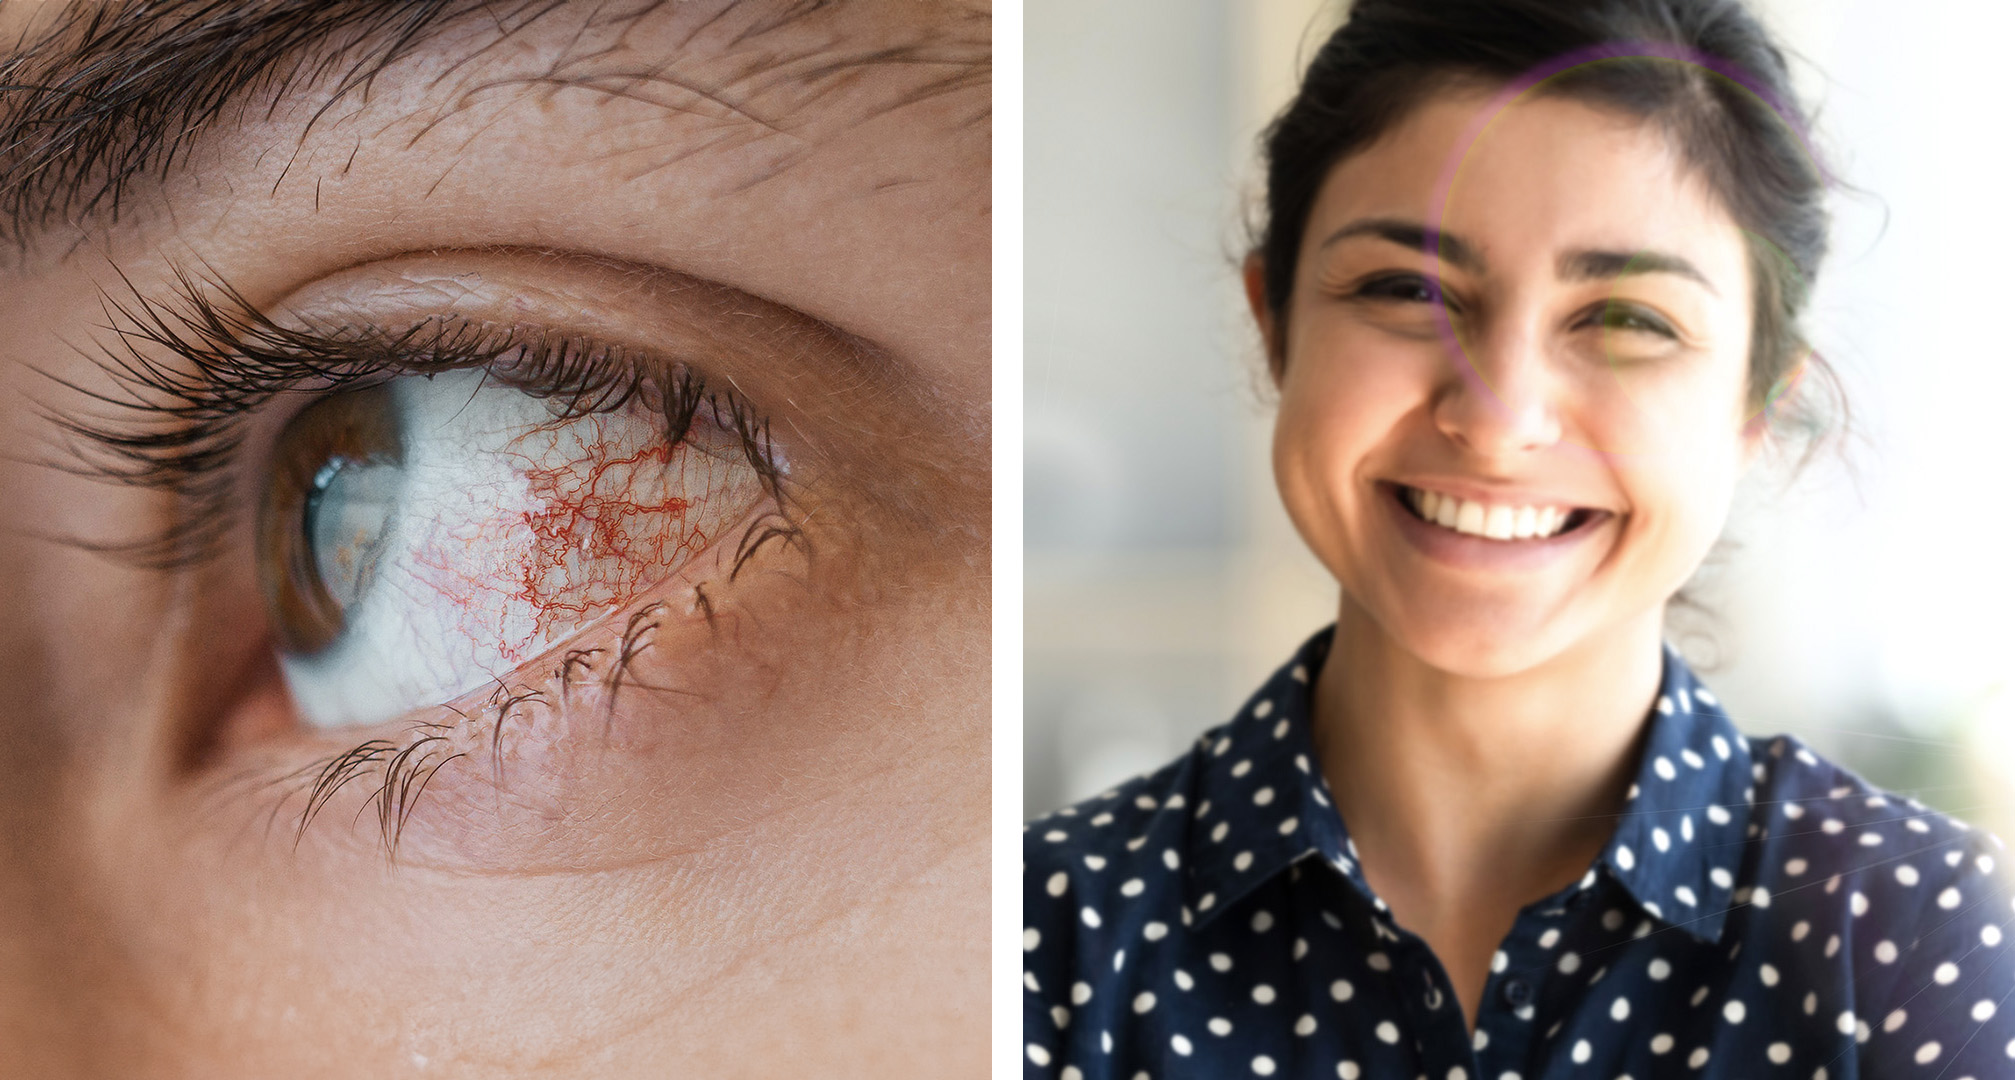 Fotokeratitida může vést k zarudnutí nebo podlití očí krví (vlevo). I když tomu tak není vždy, může vést k rozmazanému vidění nebo příznakům, jako je vidění haló v zorném poli (vpravo).